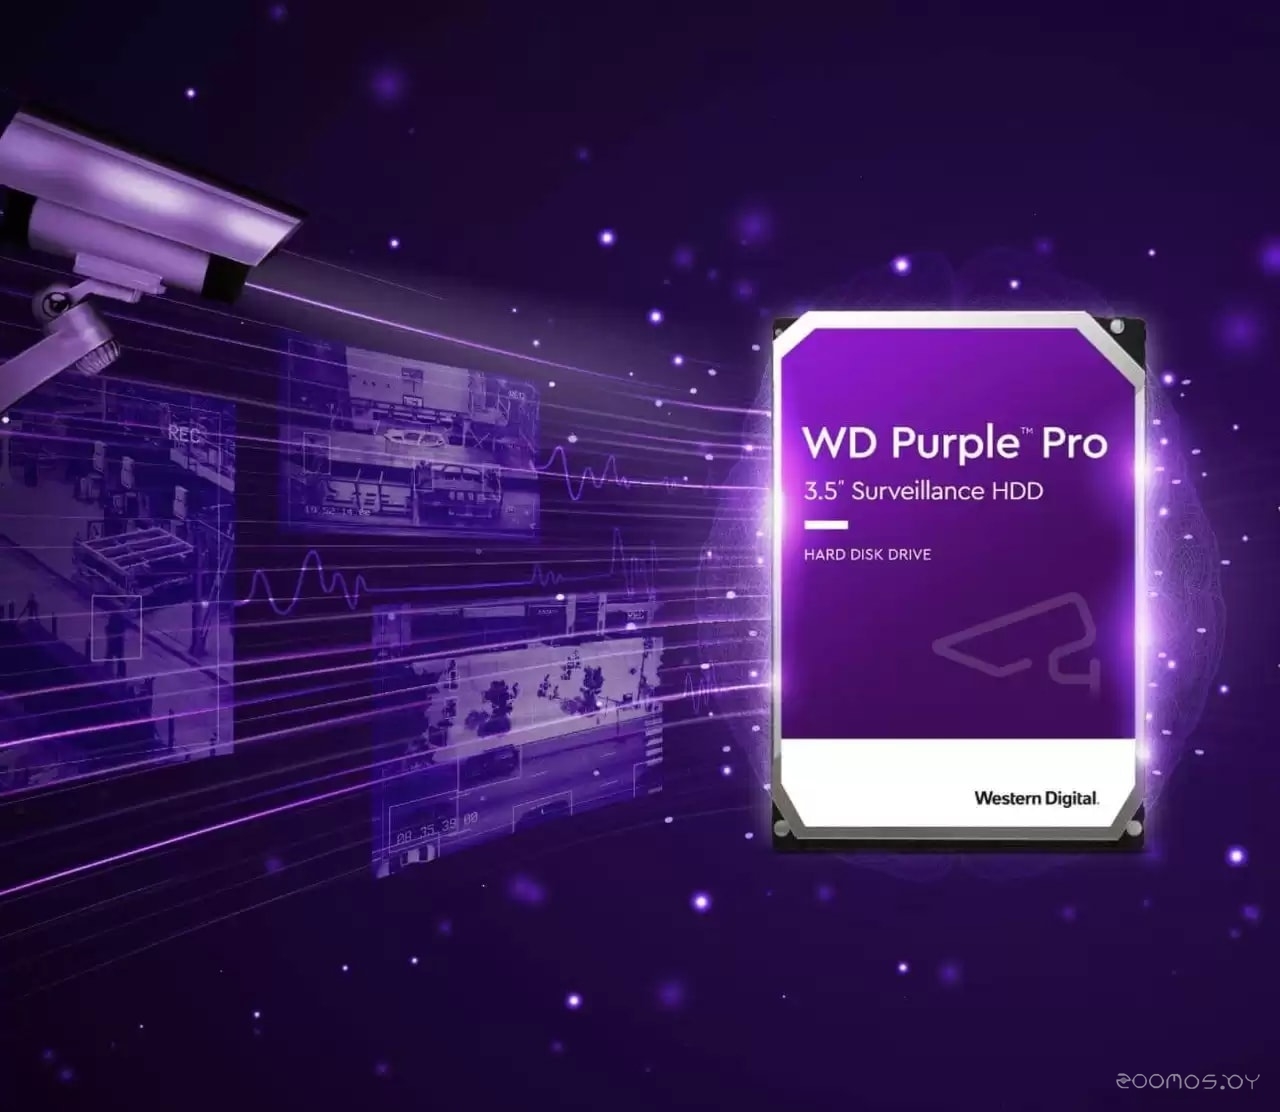   Western Digital Purple Pro 12TB WD121PURP     